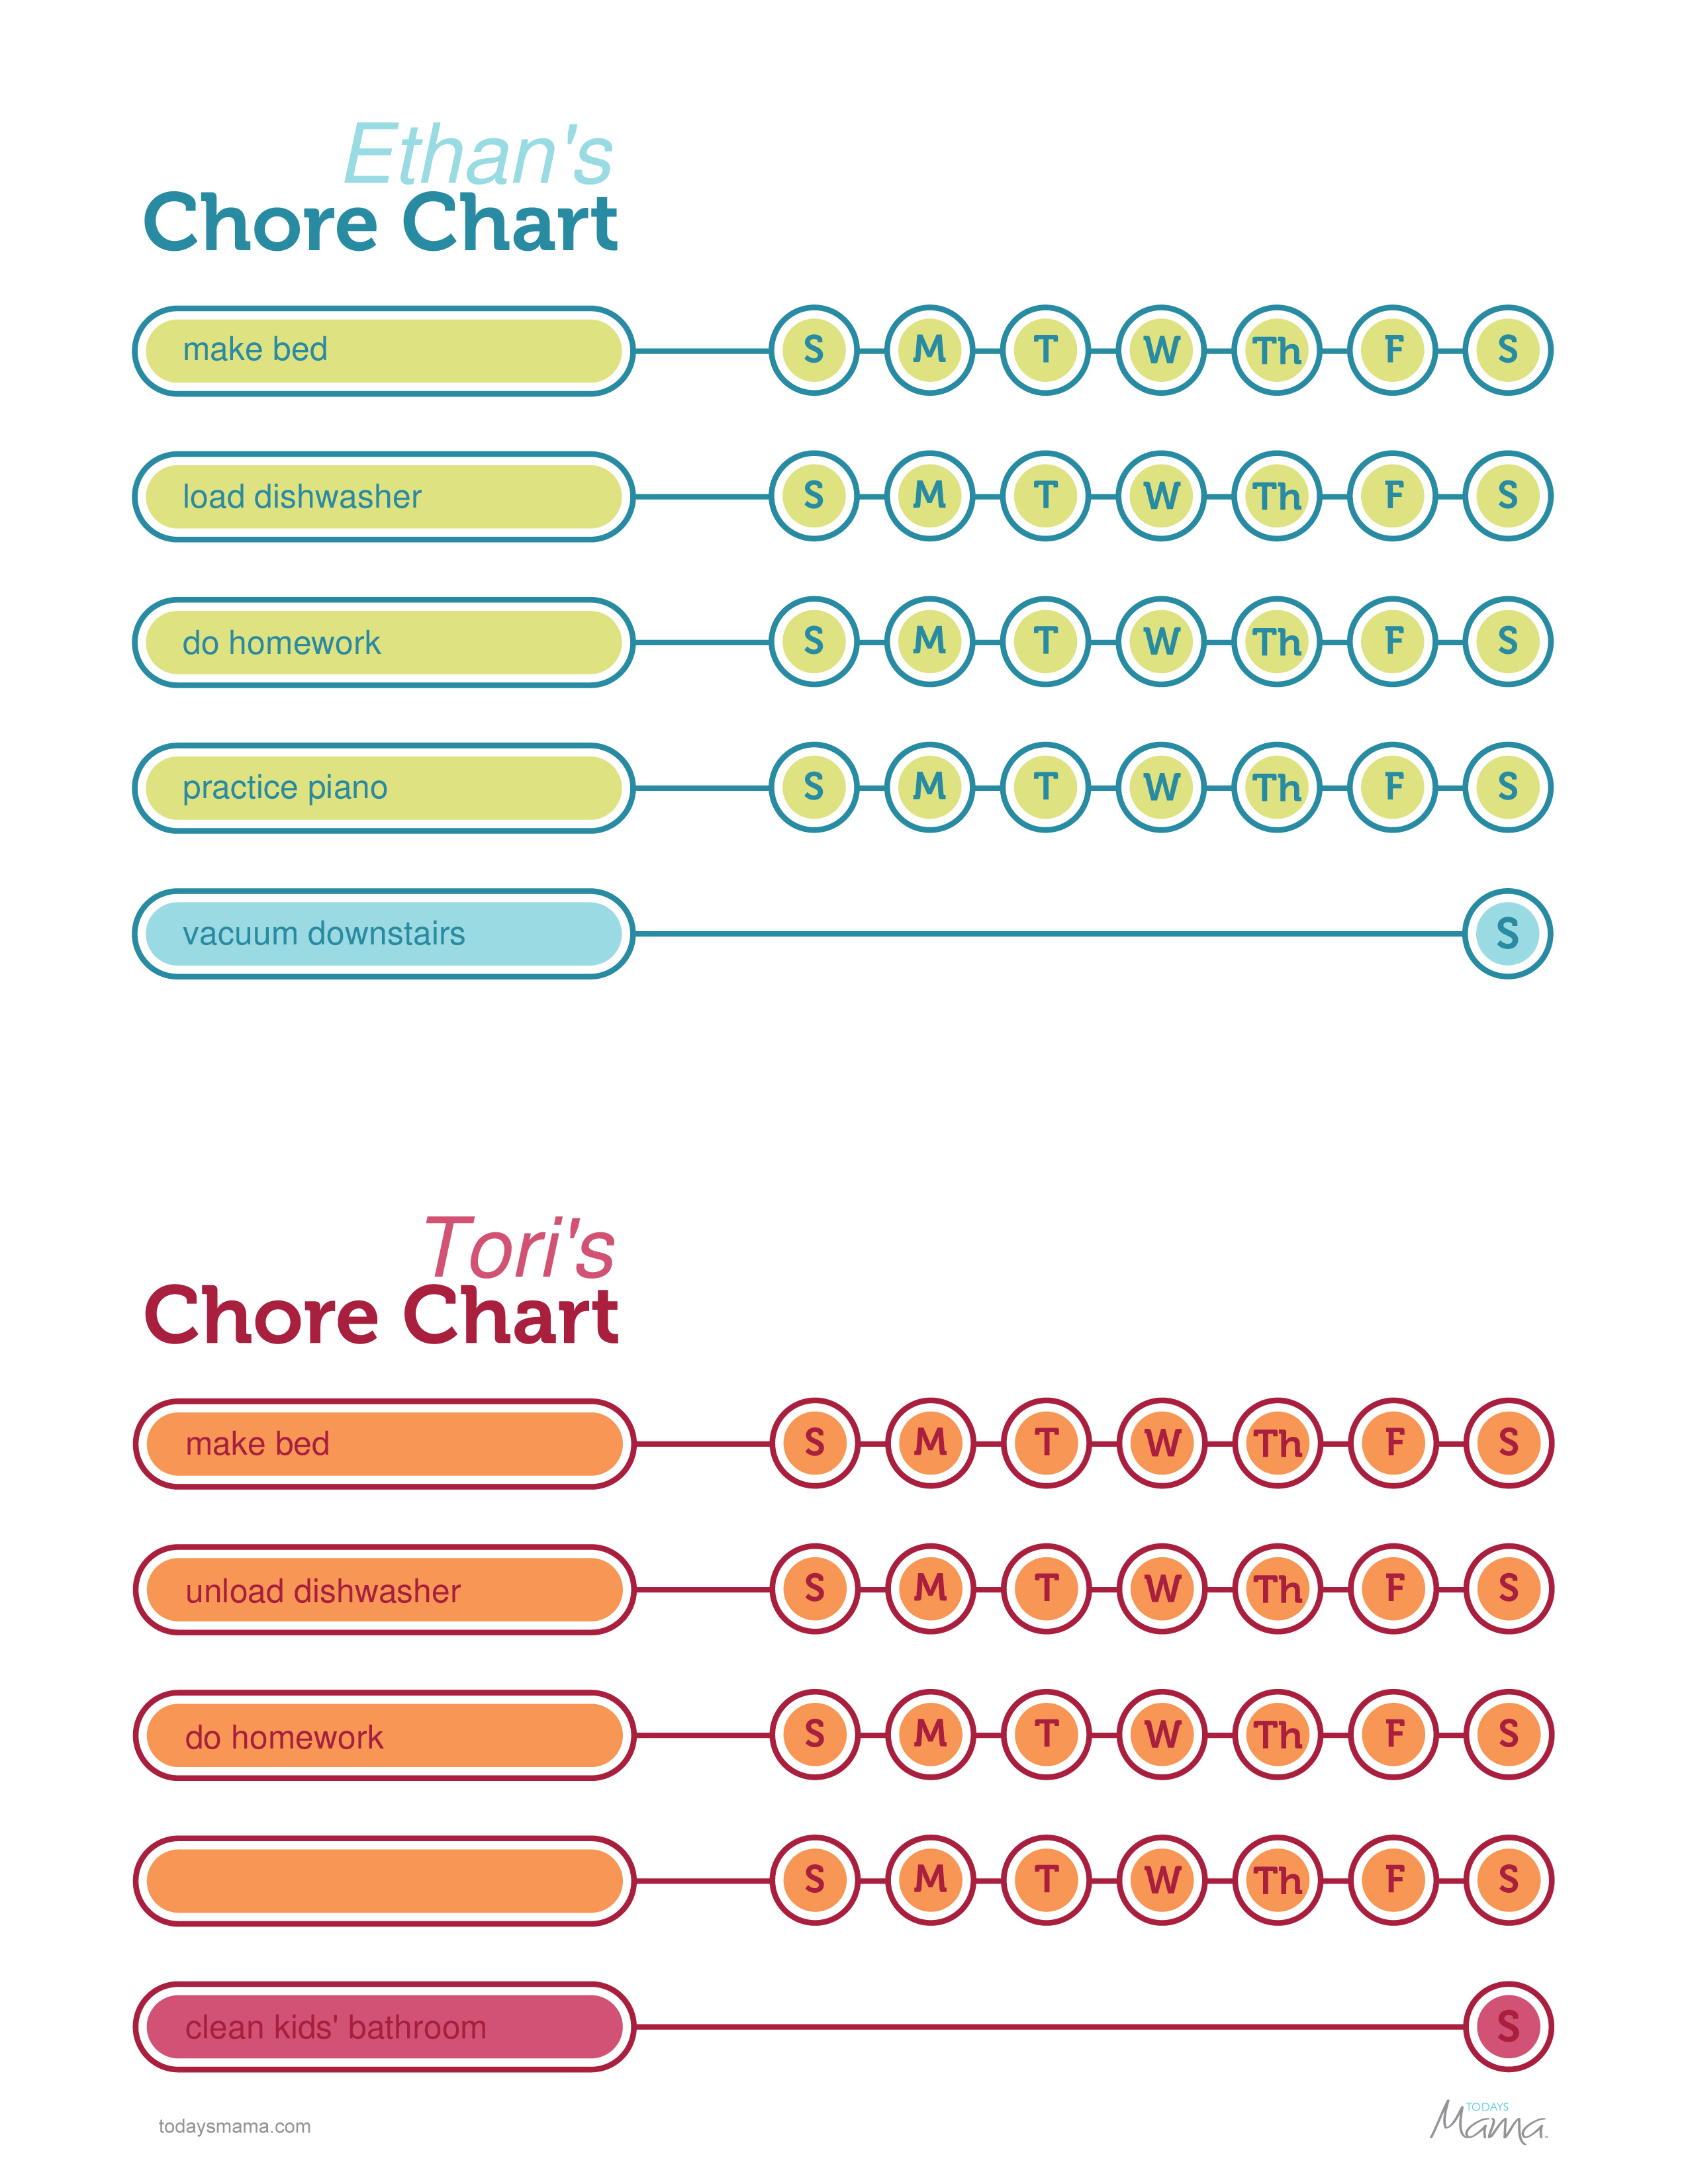 printable-chore-chart-for-kids-allbusinesstemplates